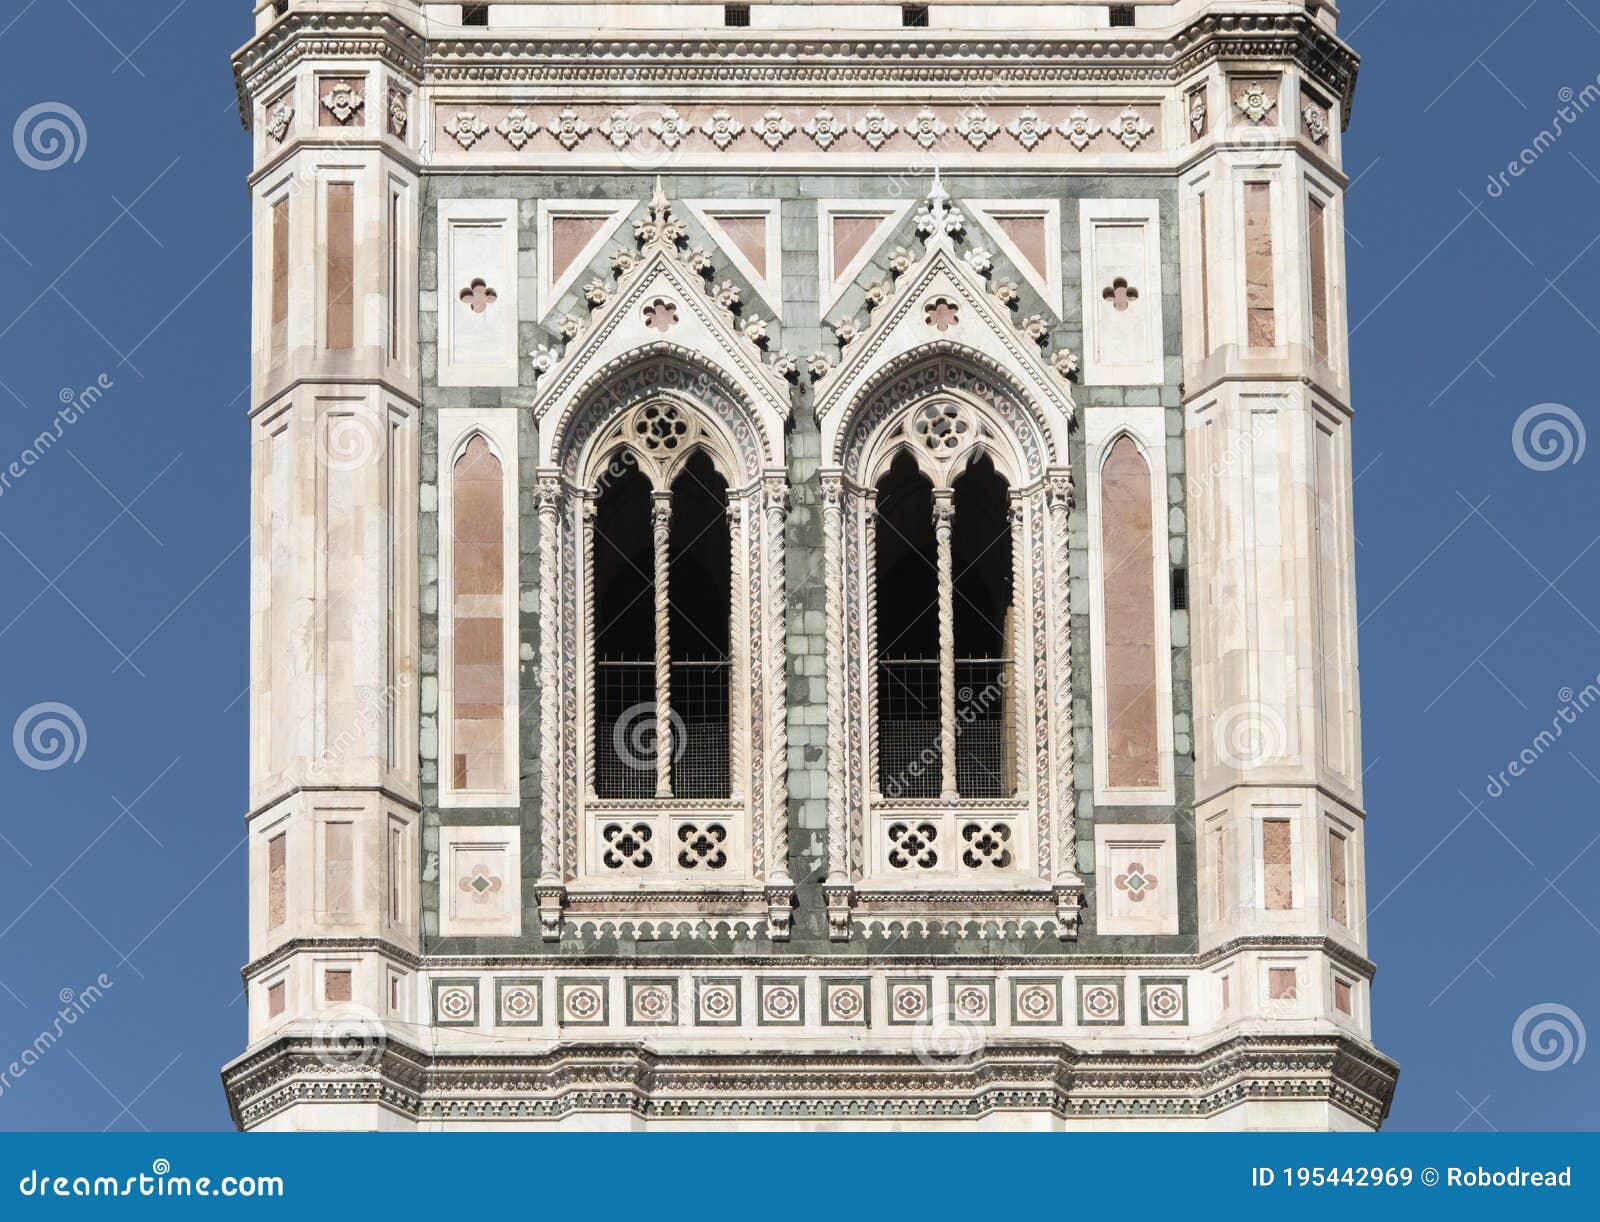 giotto`s bell tower of santa maria del fiore